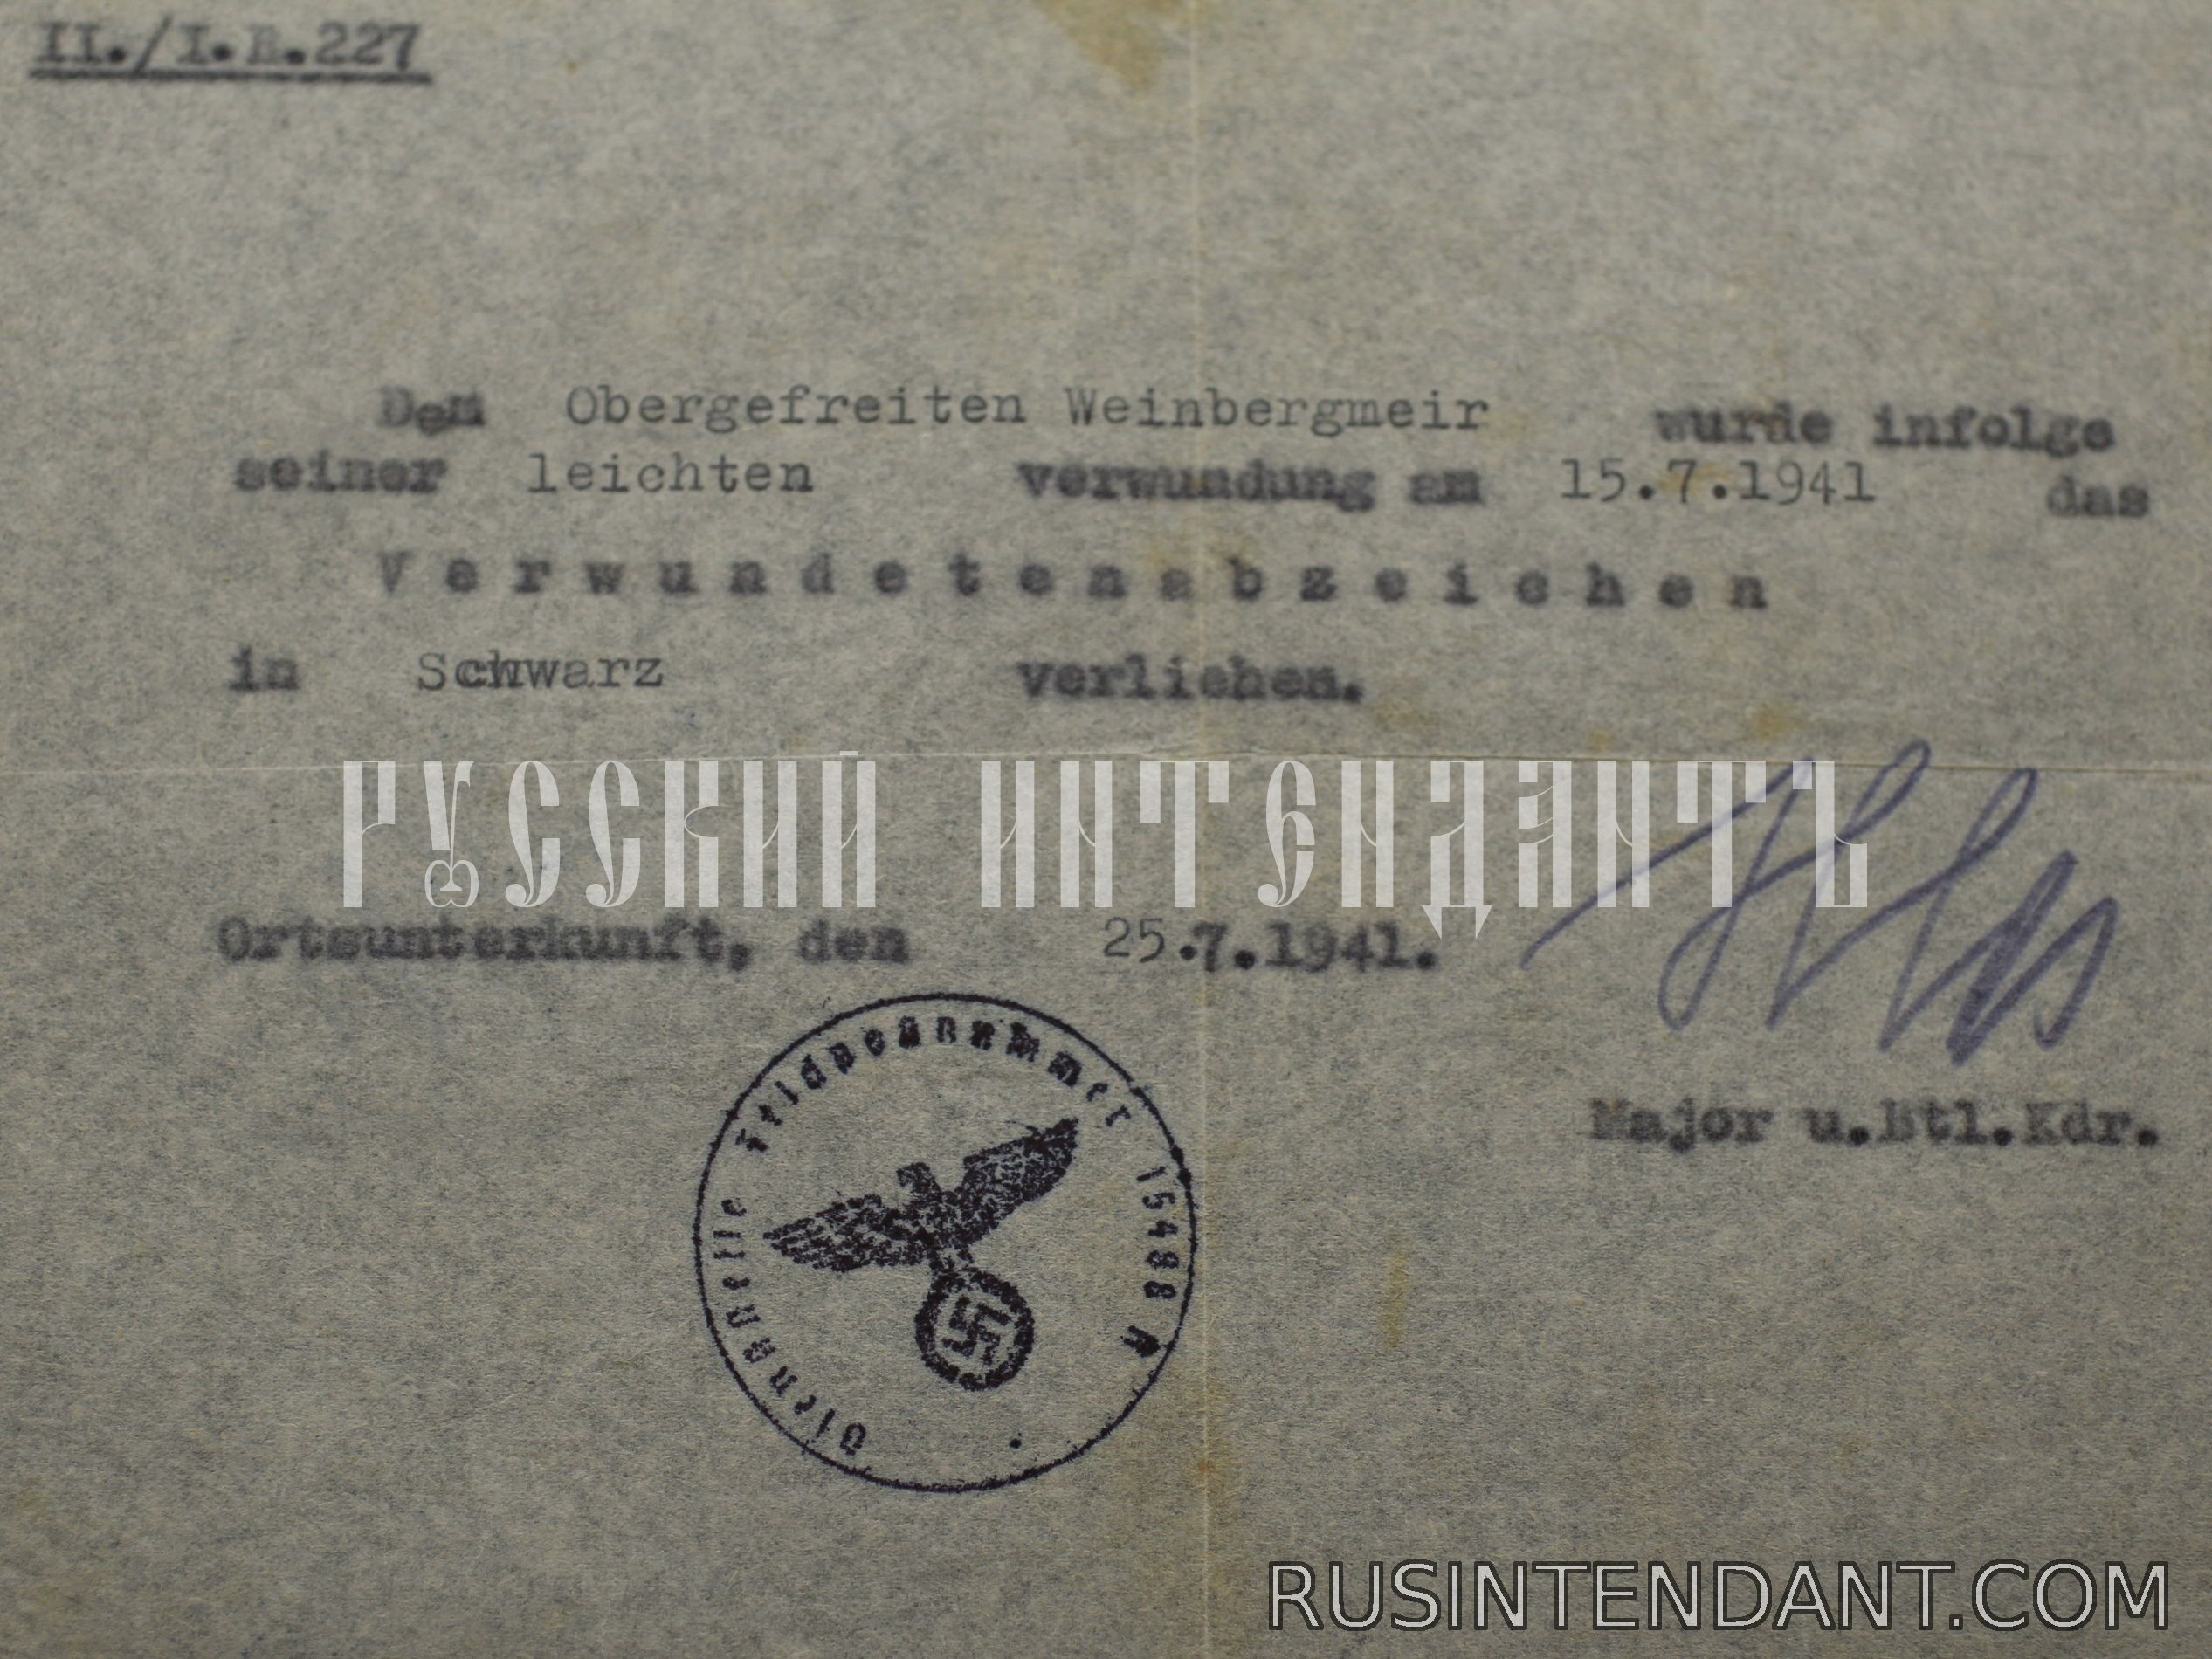 Фото 3: Наградные документы обер-ефрейтора Вайнбергмайера 